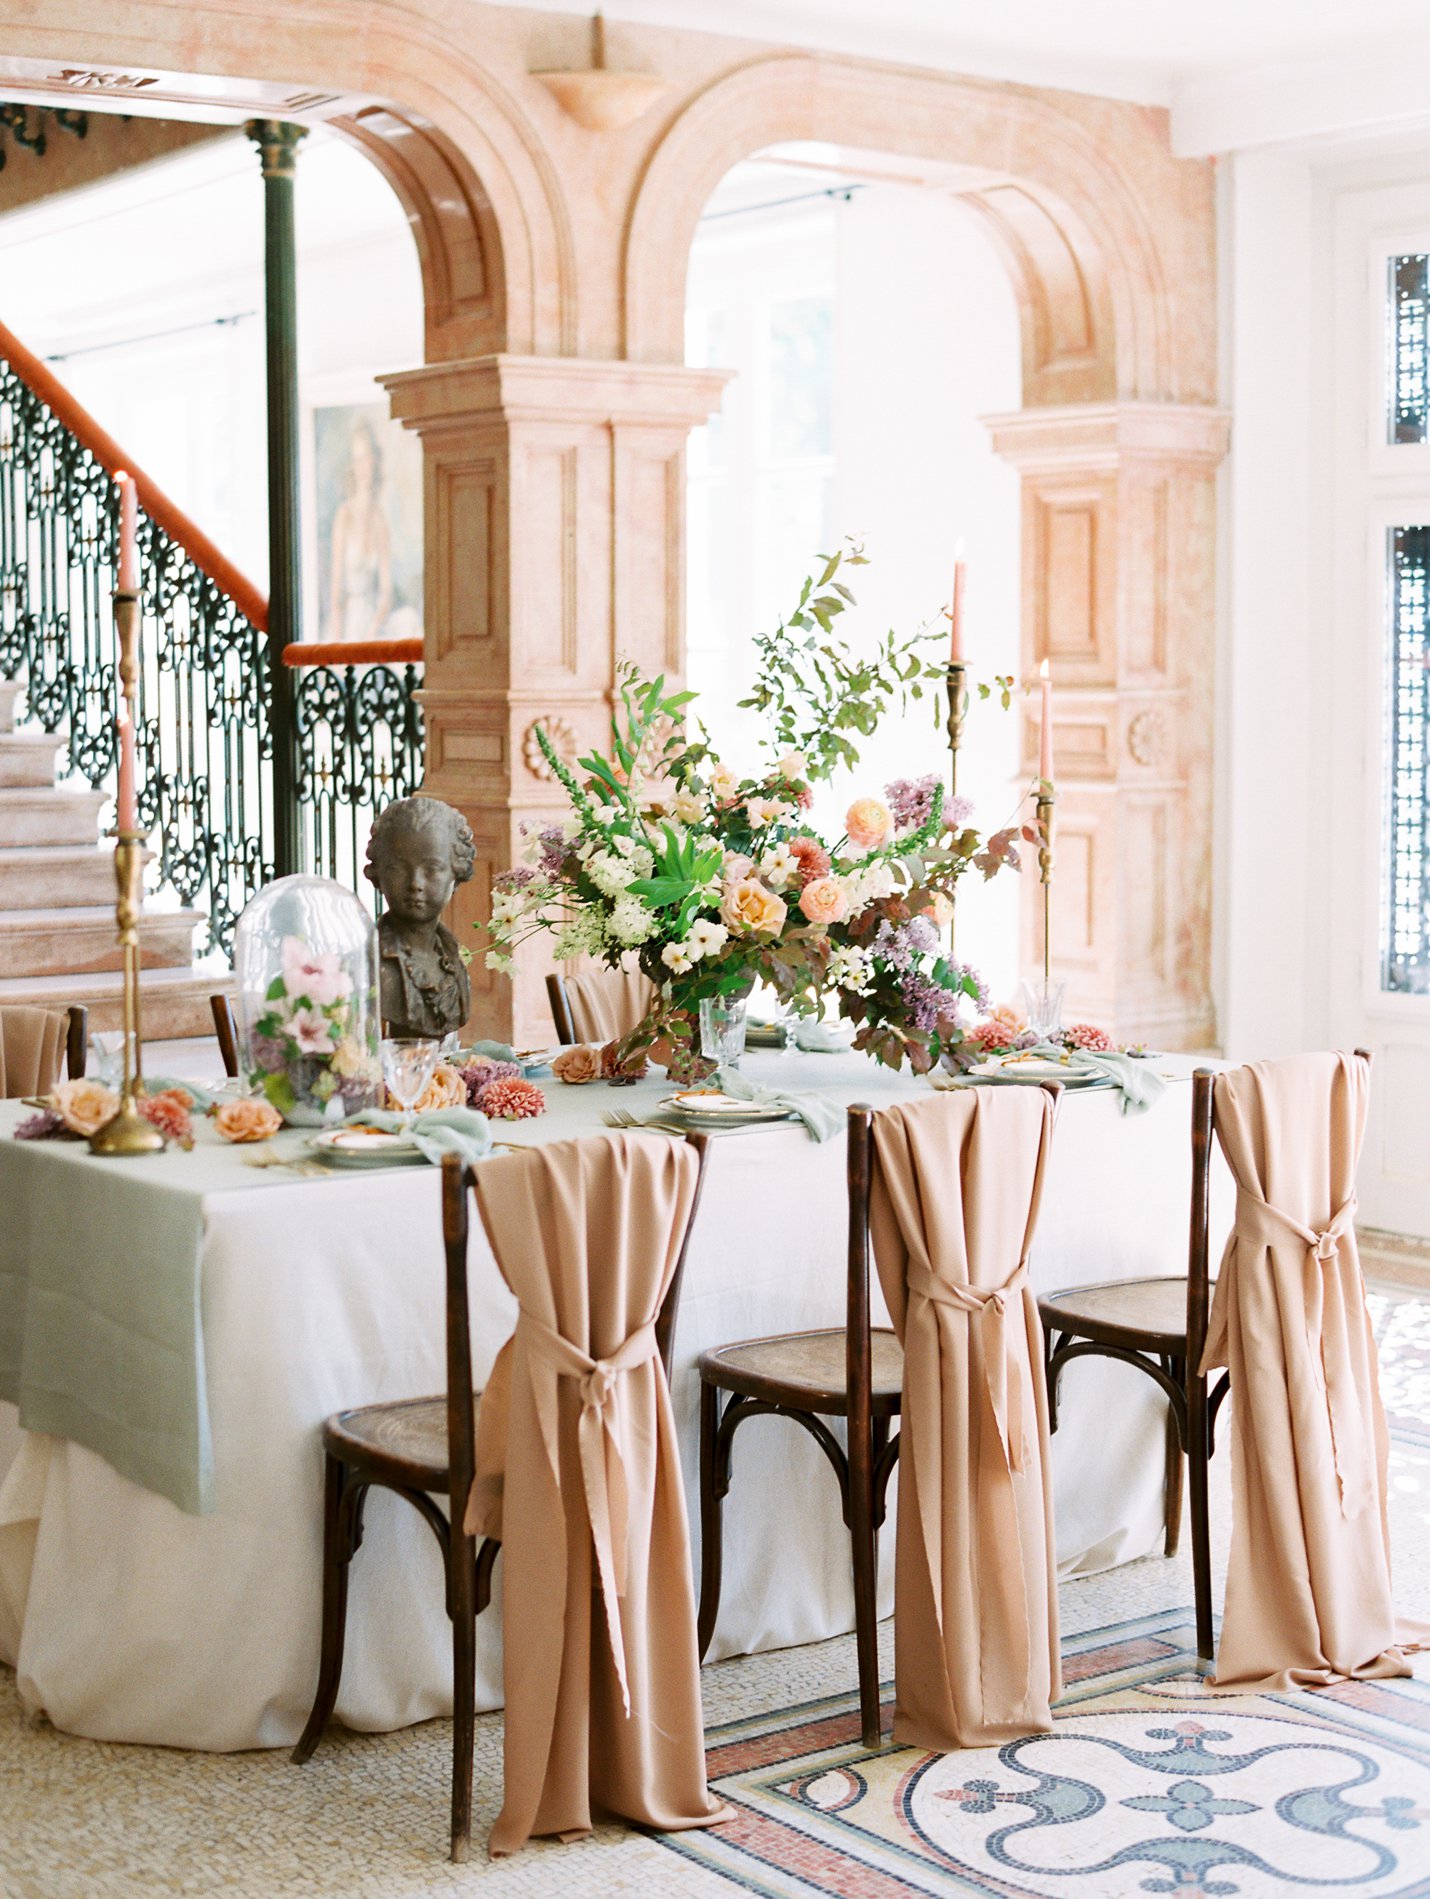 Chateau de Varennes Wedding - Burgundy France - Rachel Solomon Photography